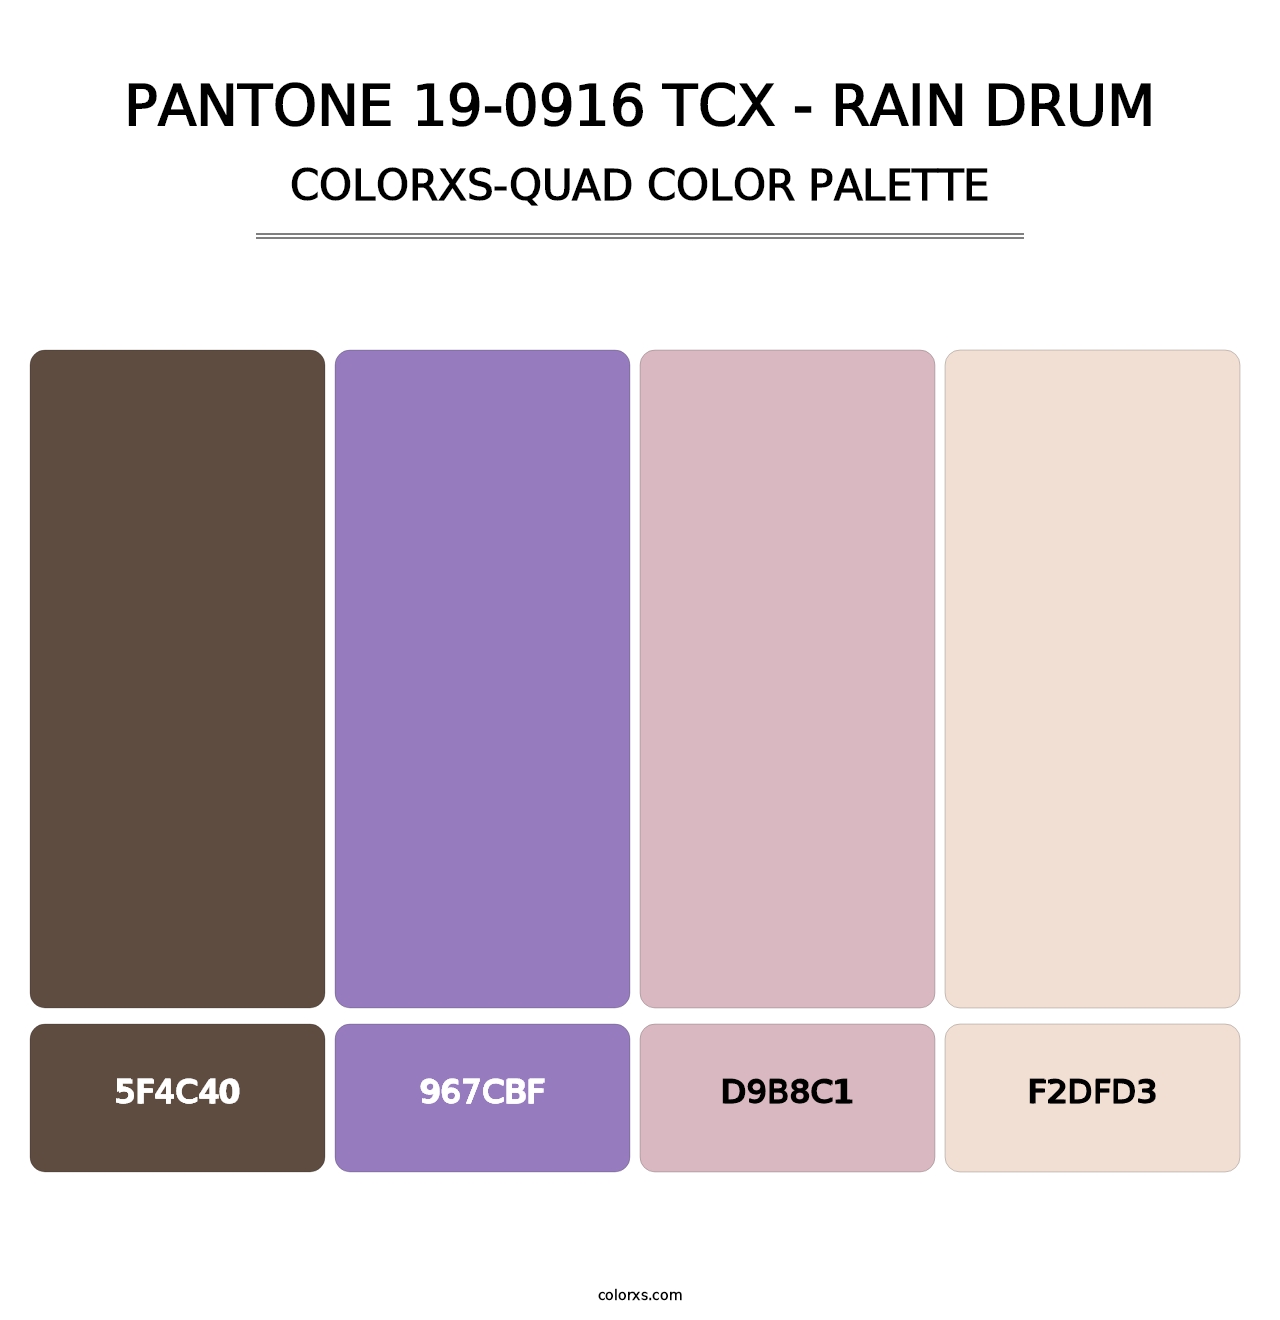 PANTONE 19-0916 TCX - Rain Drum - Colorxs Quad Palette